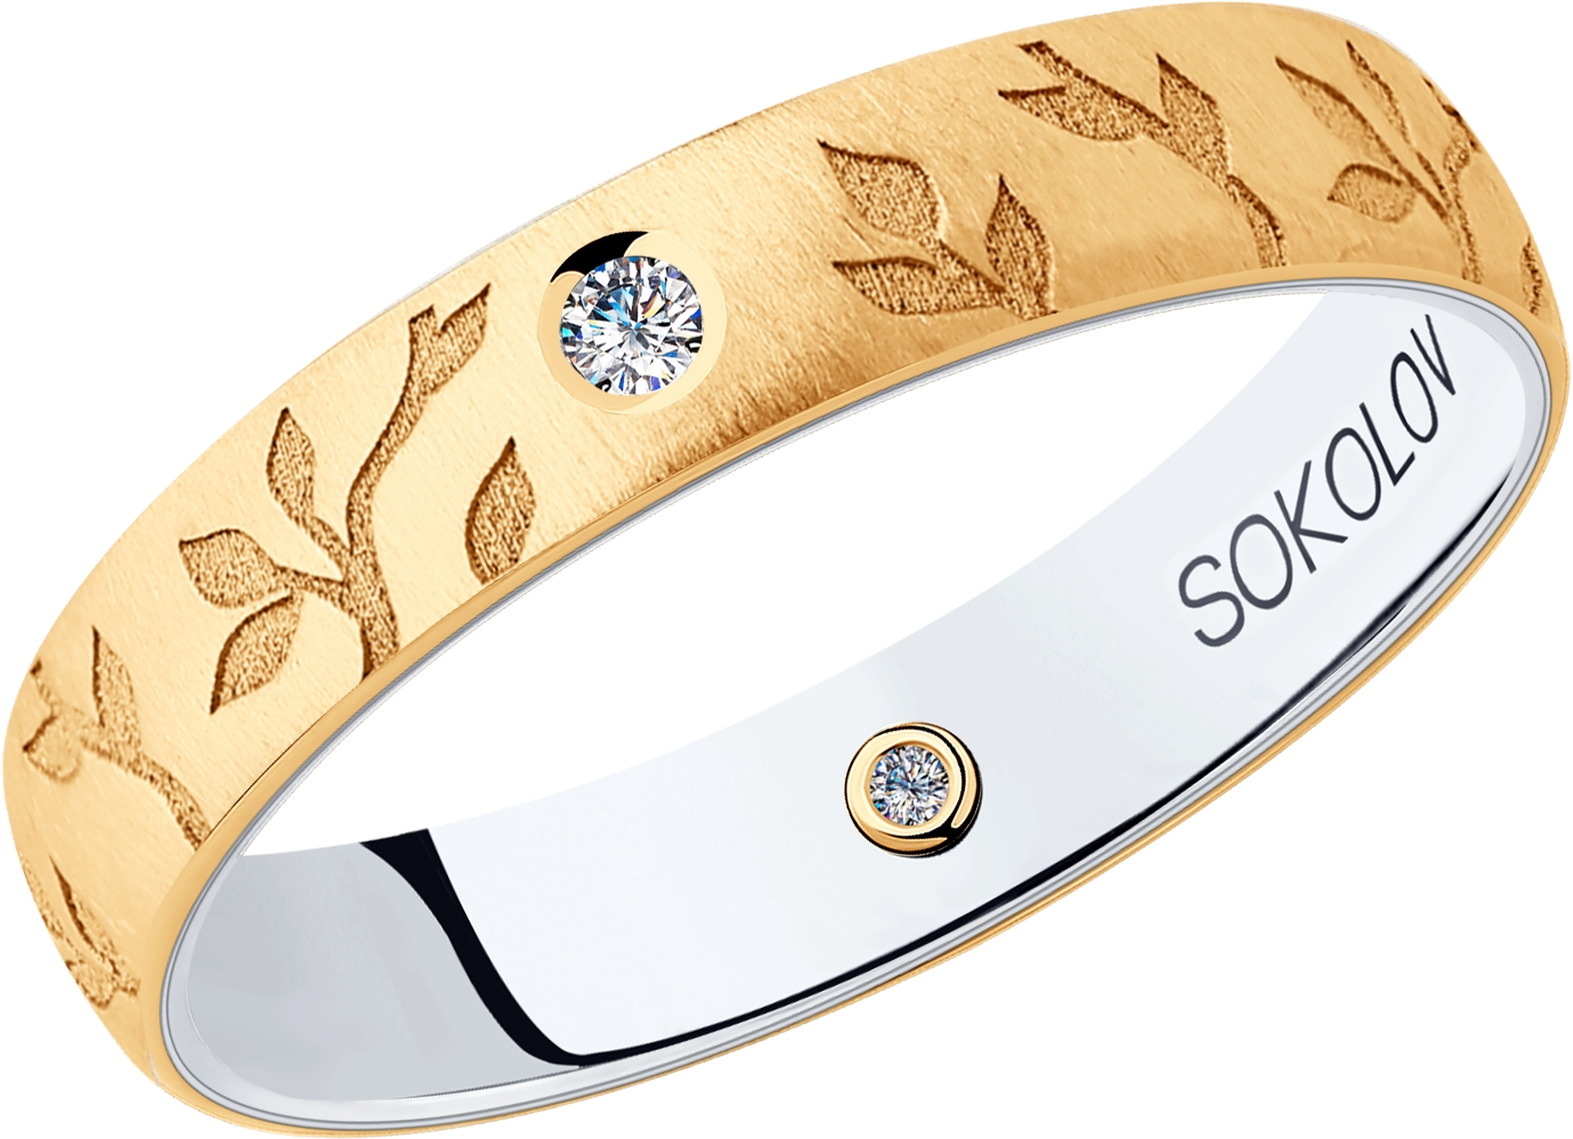 Соколов проба золота. Кольцо SOKOLOV 585 про. SOKOLOV кольцо из золота 017701. Кольцо SOKOLOV из золота. Кольцо из комбинированного золота Соколов.